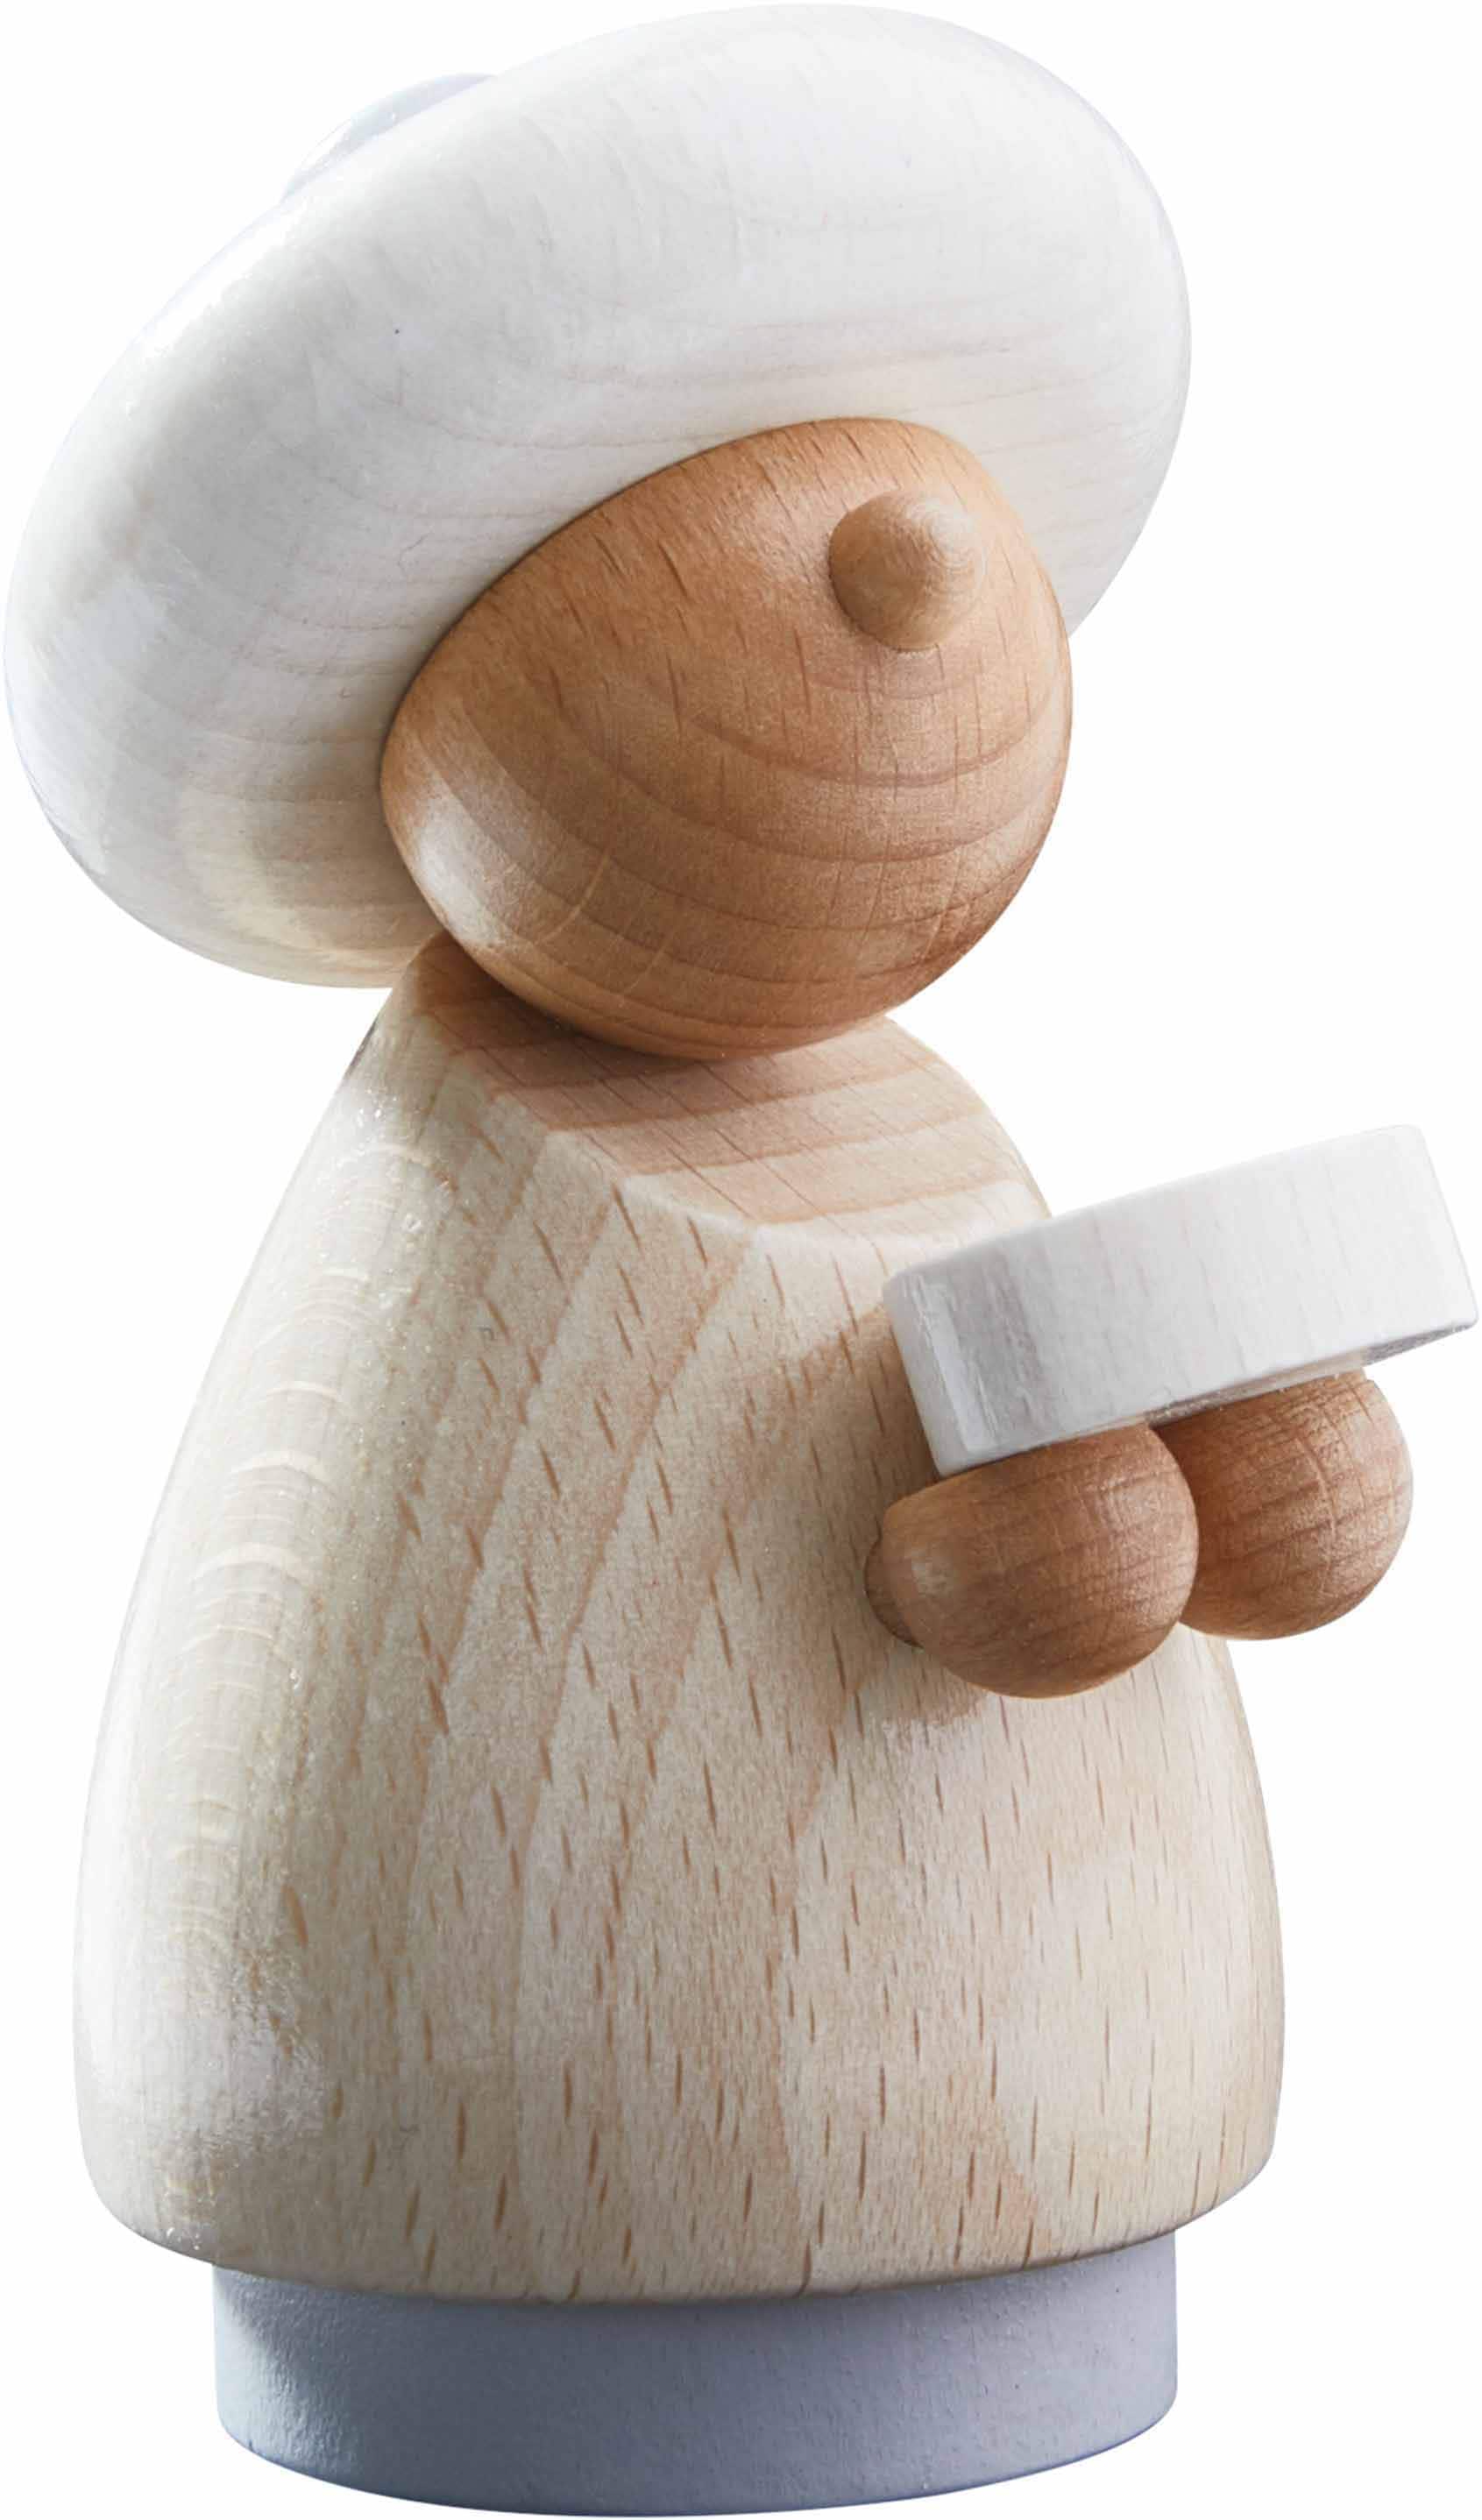 Haba Spielfigur »Holzspielzeug, Weihnachtskrippe«, ; Made in Germany online  kaufen | OTTO